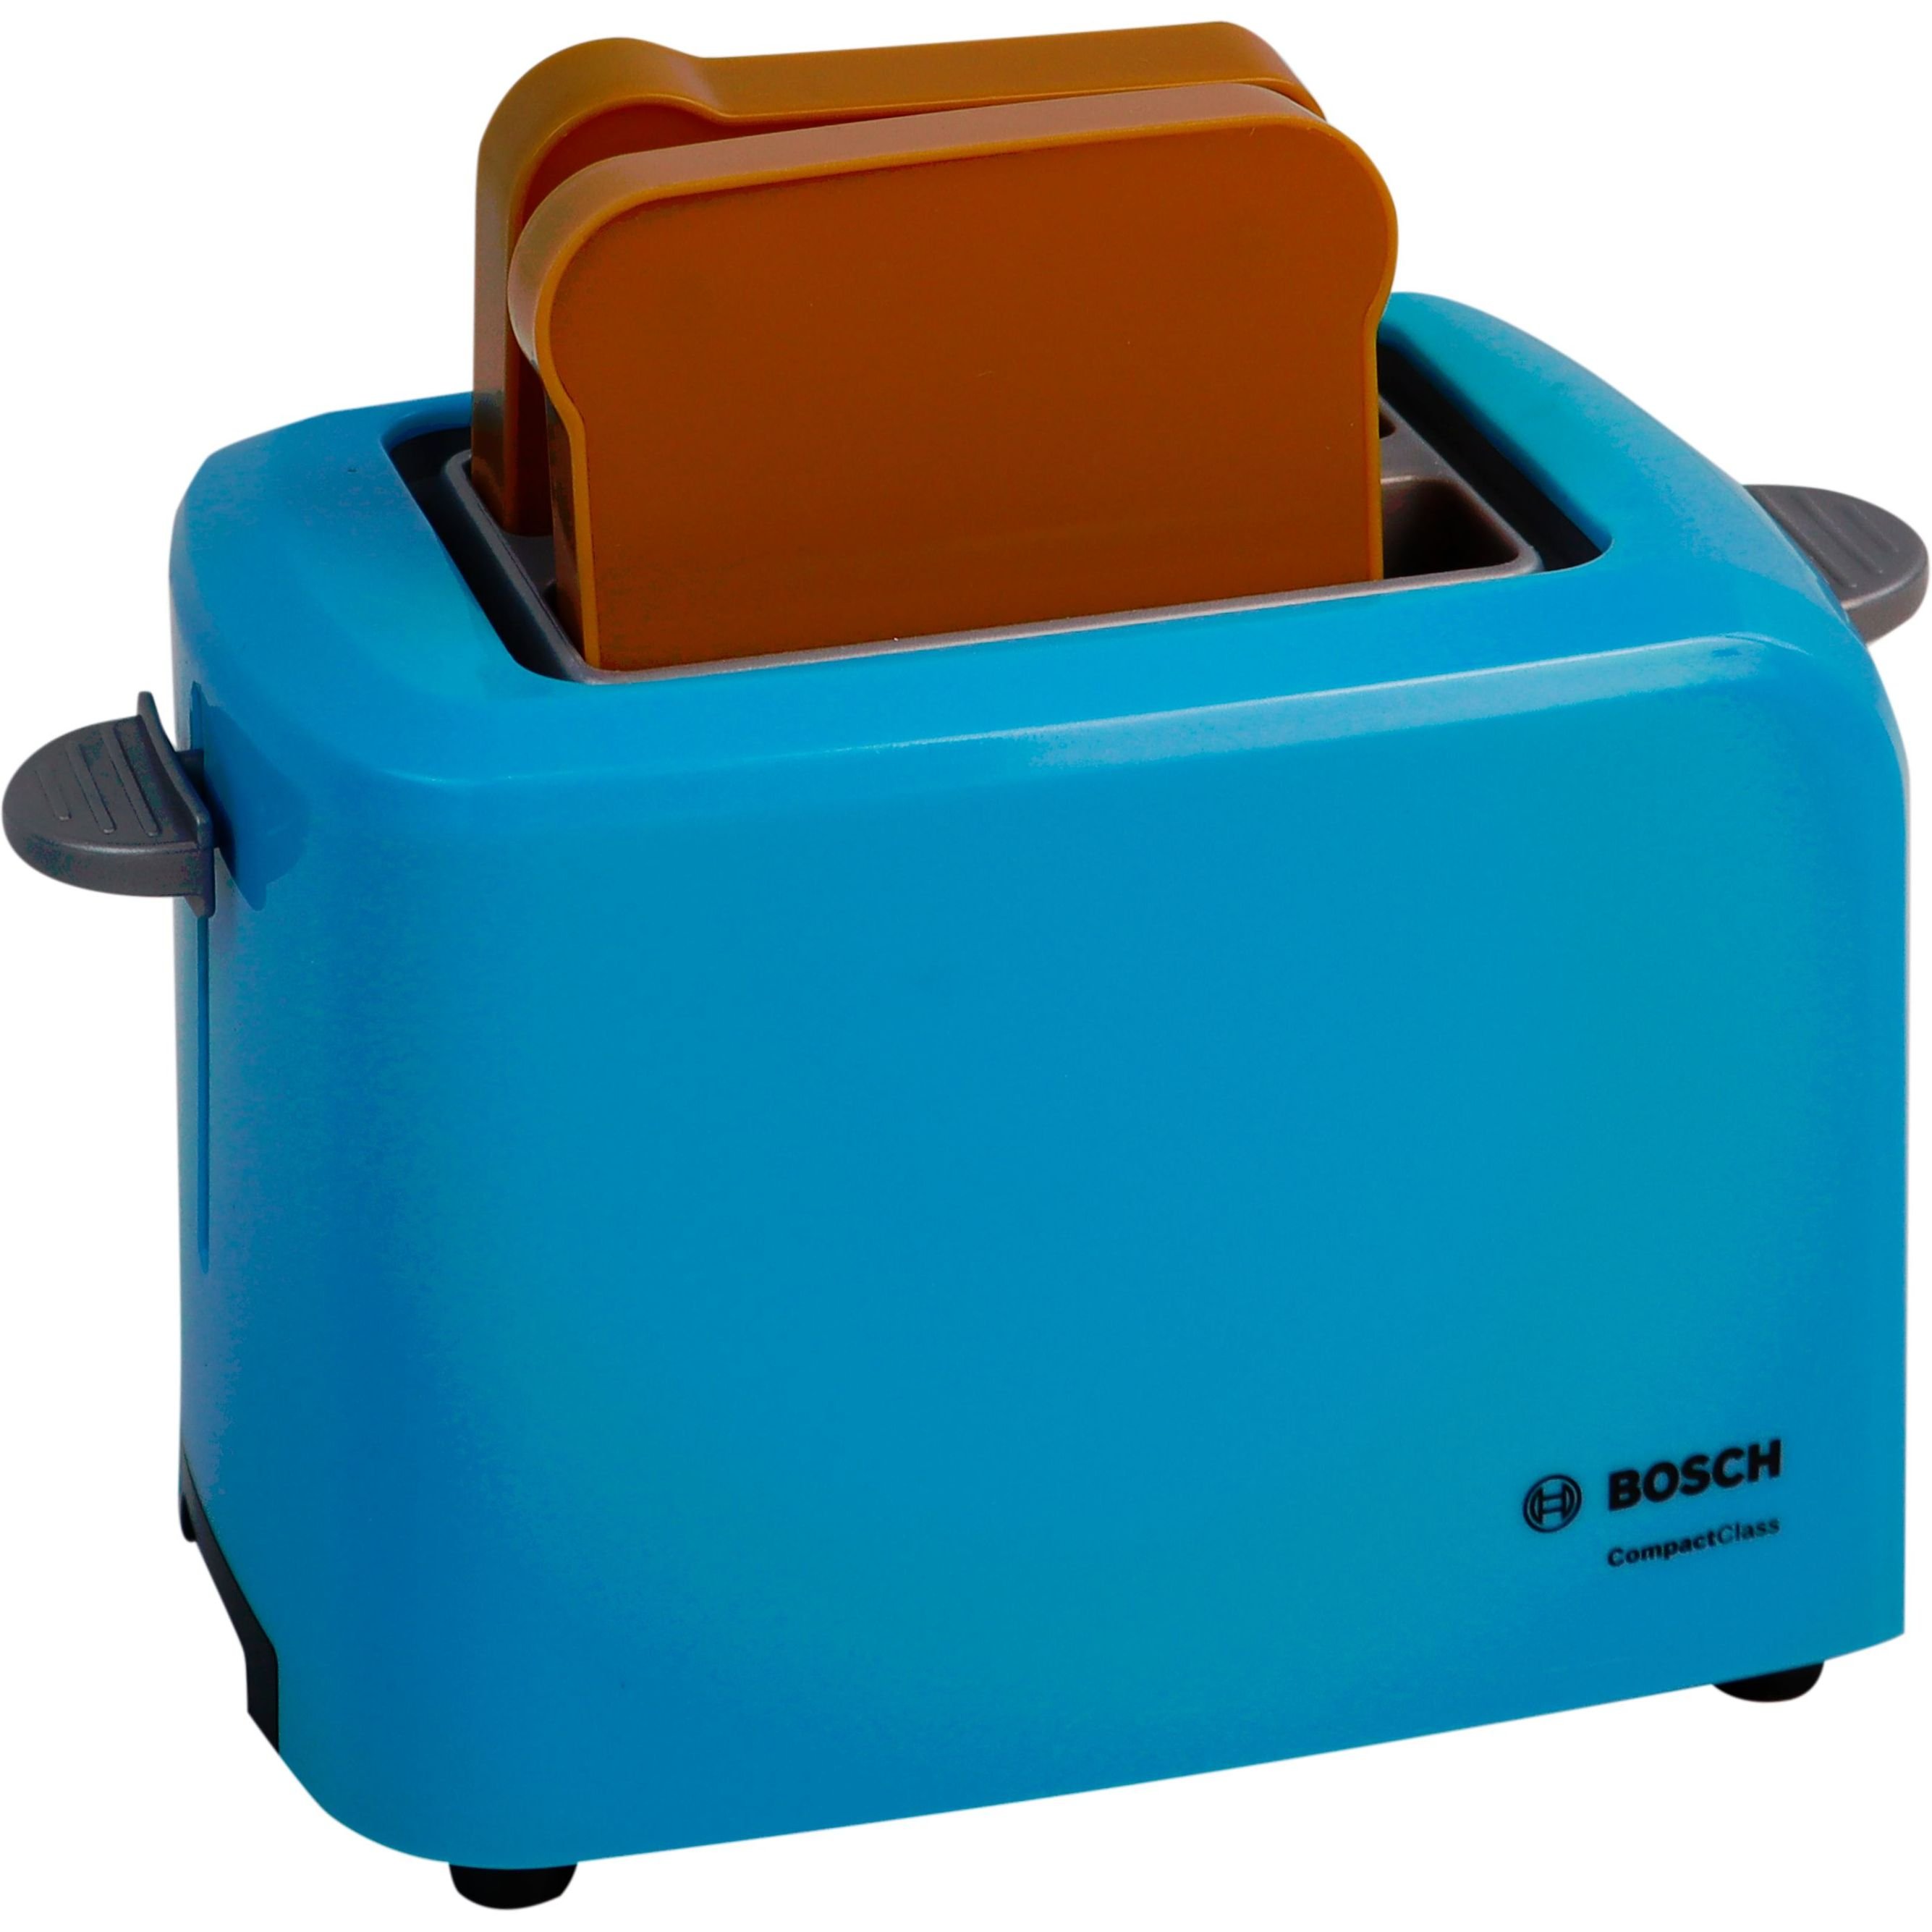 Игрушечный набор Bosch Mini тостер бирюзовый (9518) - фото 2